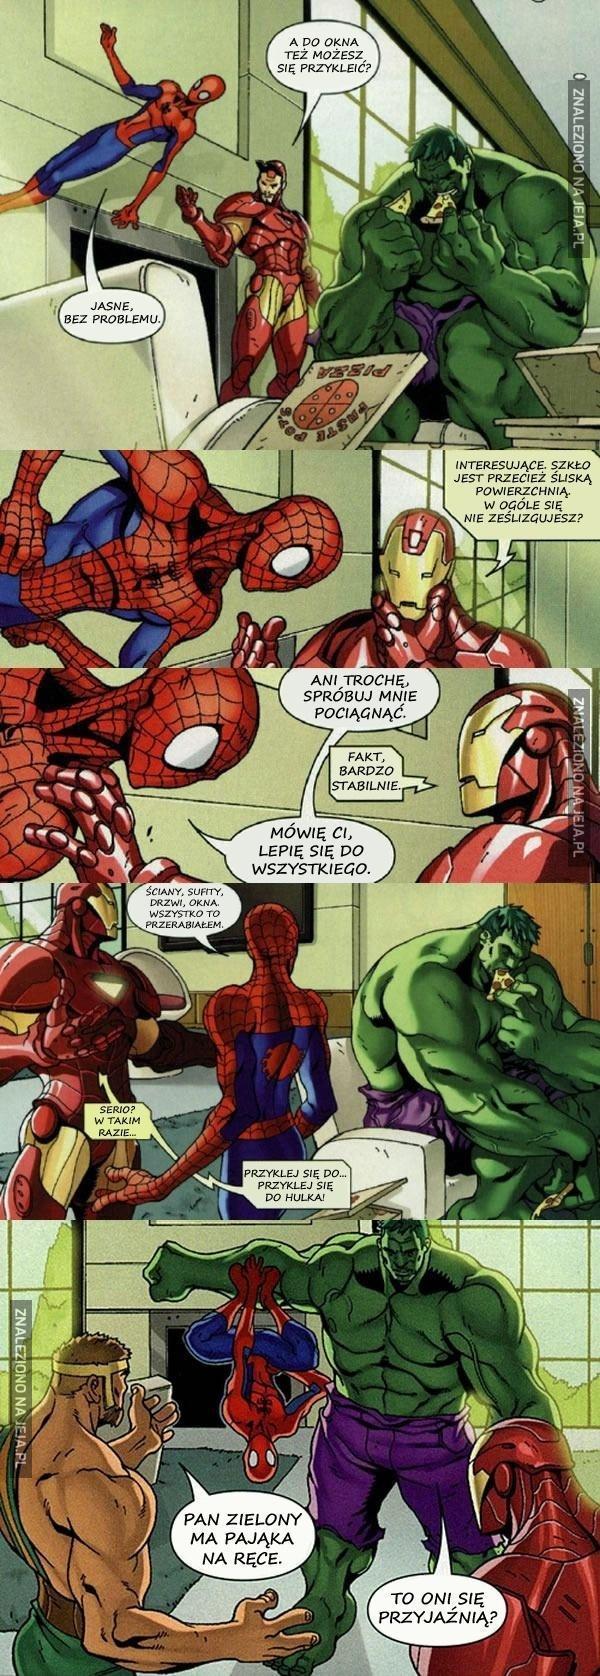 Spiderman lepi się do wszystkiego